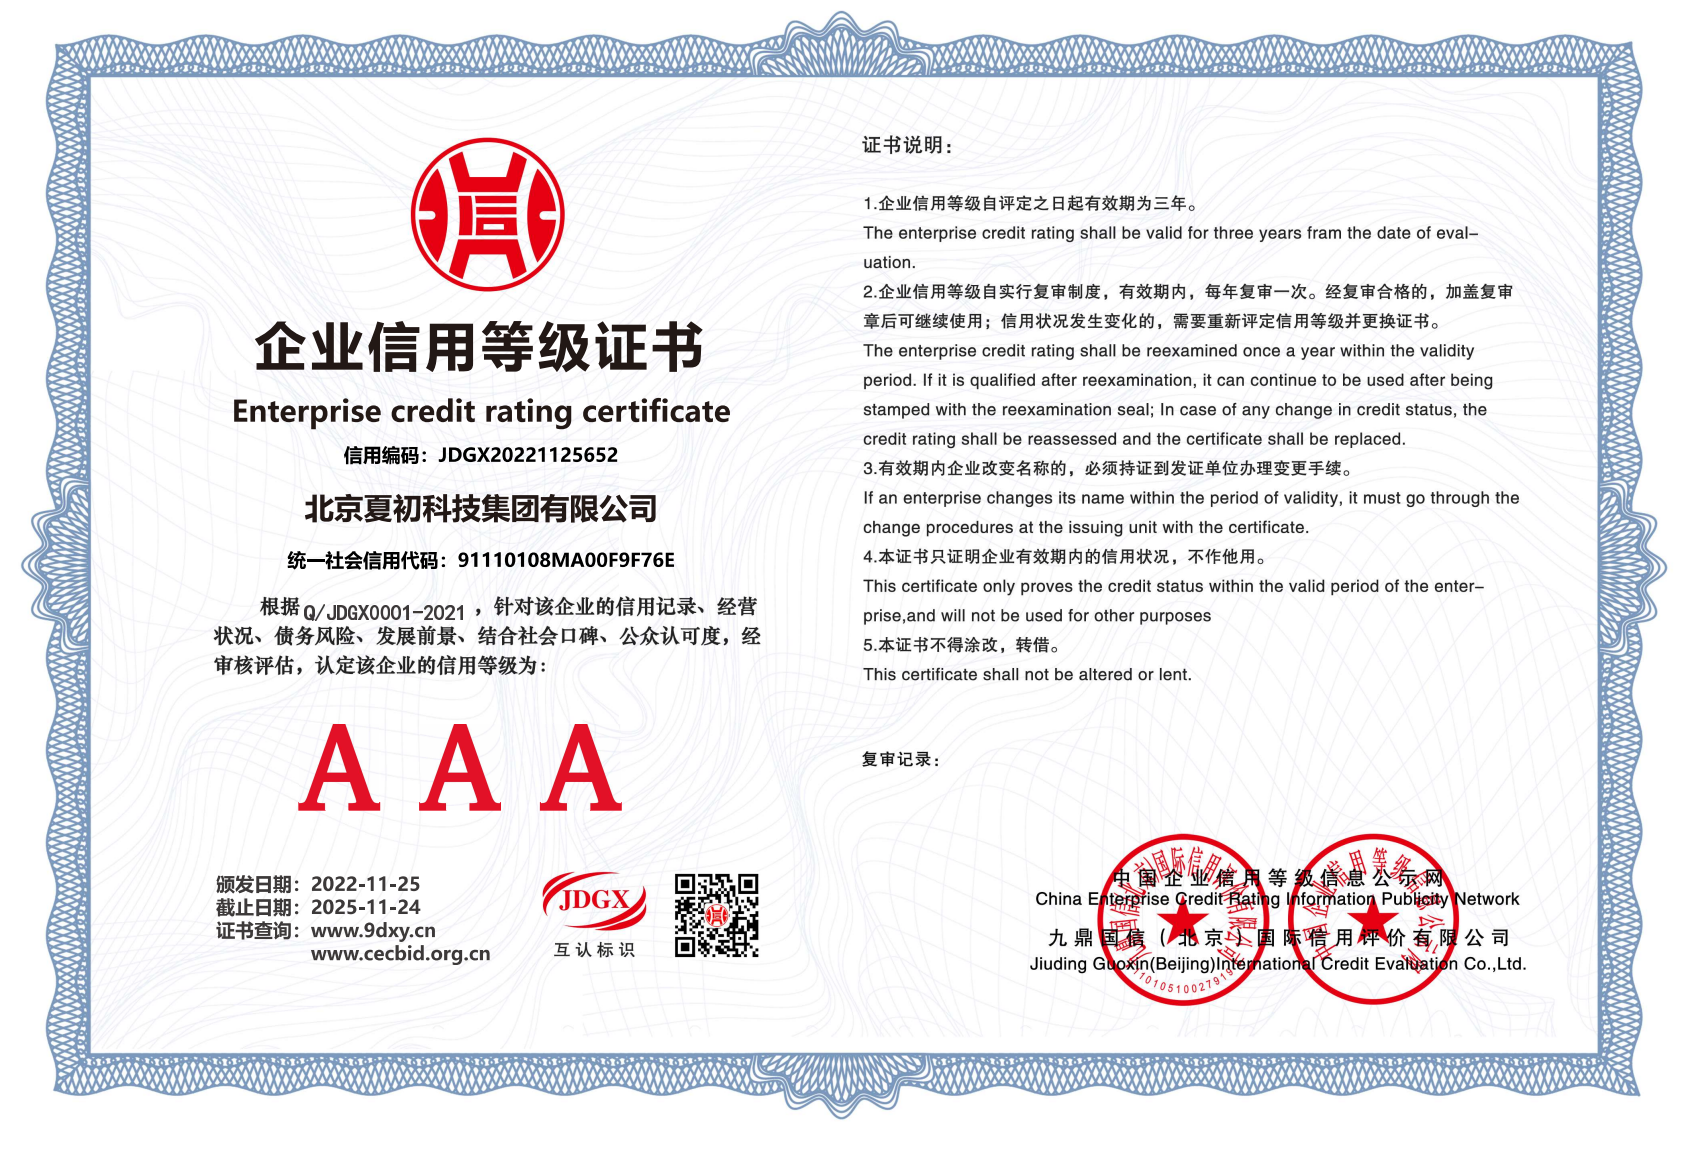 北京夏初科技集团有限公司-企业信用等级证书